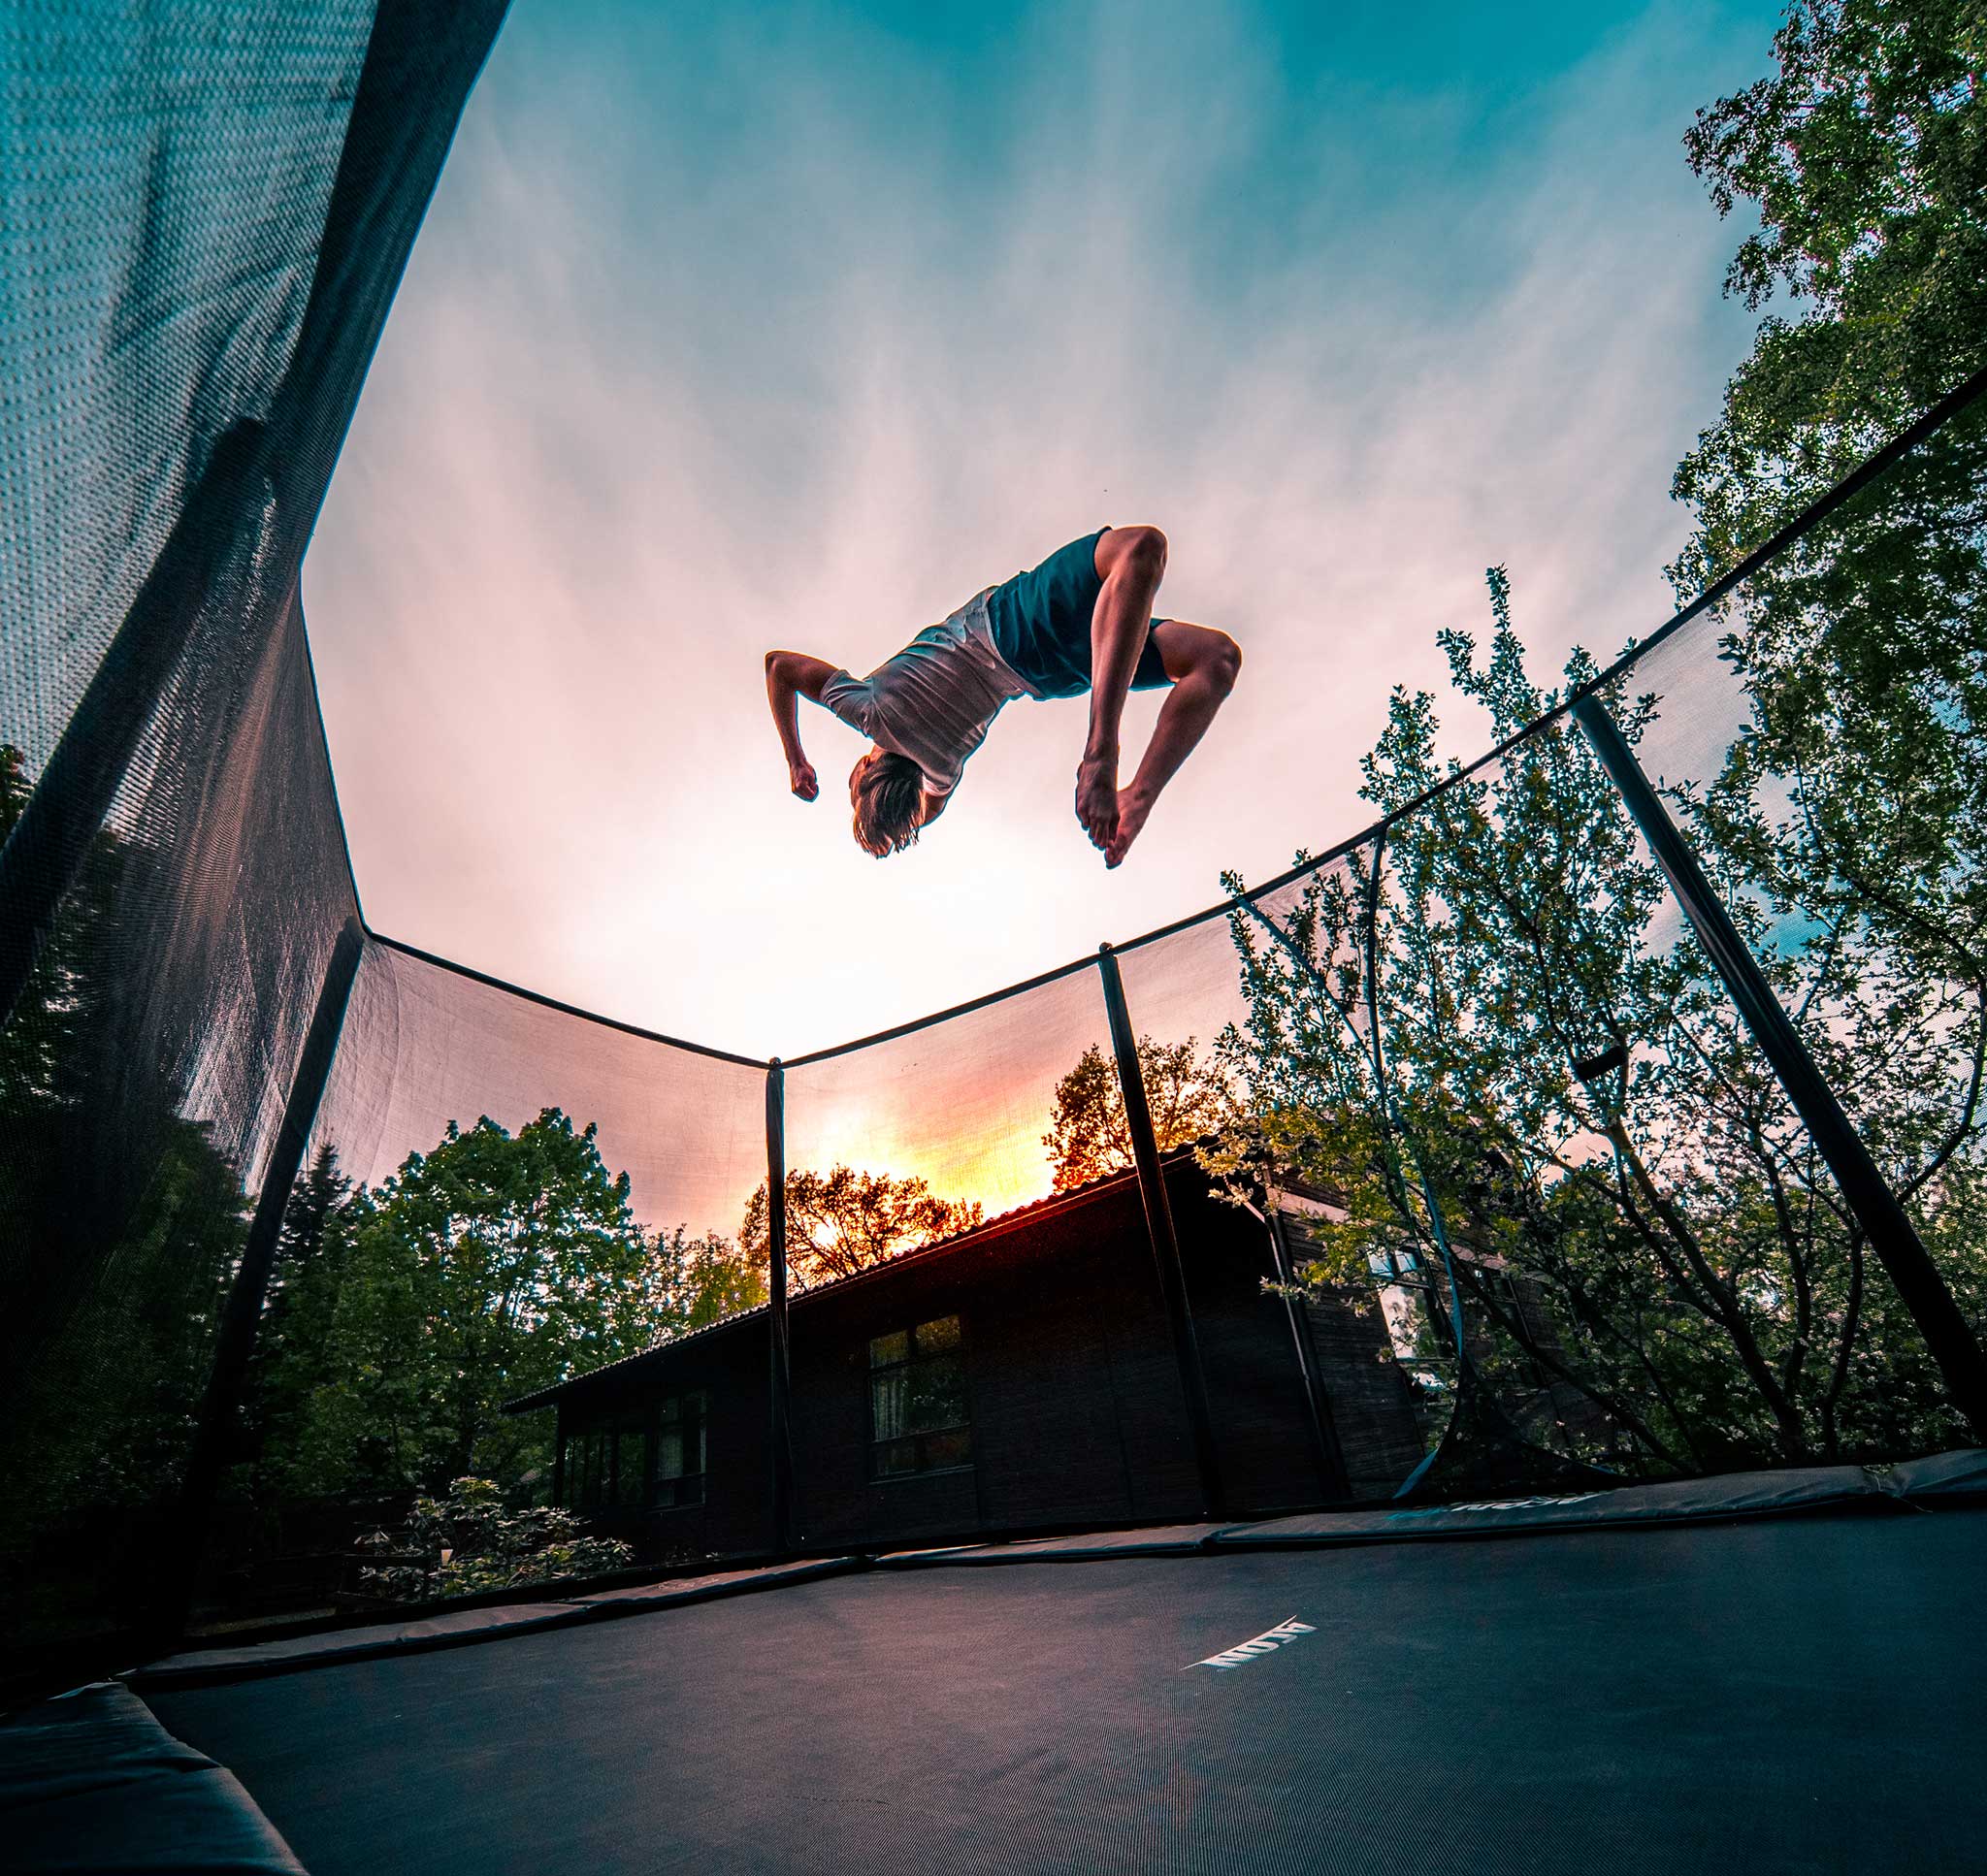 A boy doing a backflip on an ACON 16 Sport HD trampoline.